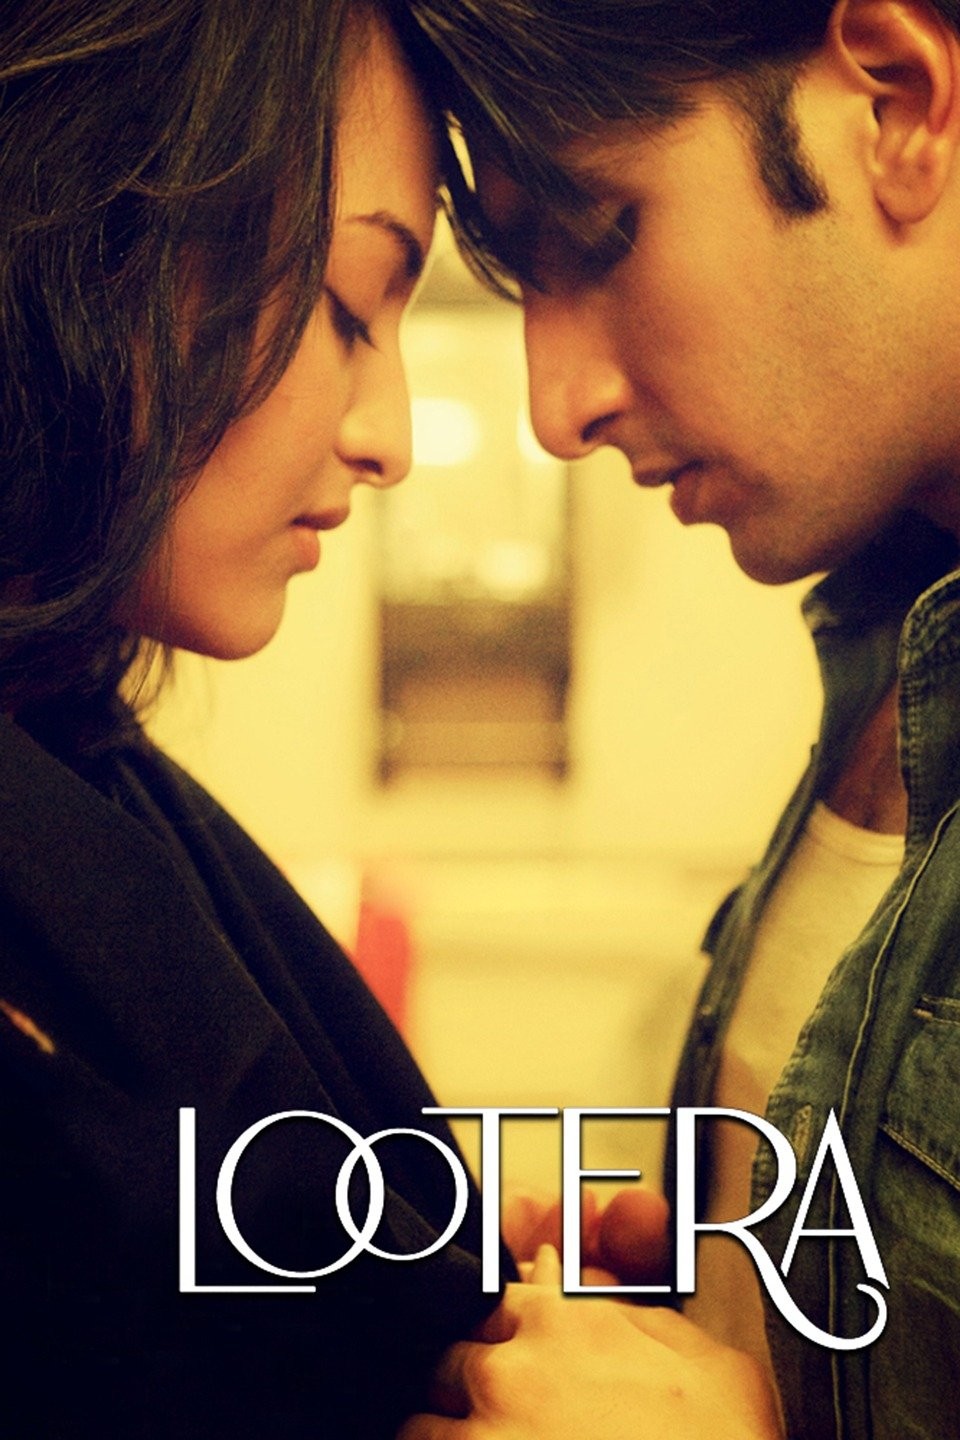 Lootera (2013) Hindi Full Movie 1080p | 720p | 480p HDRip Download